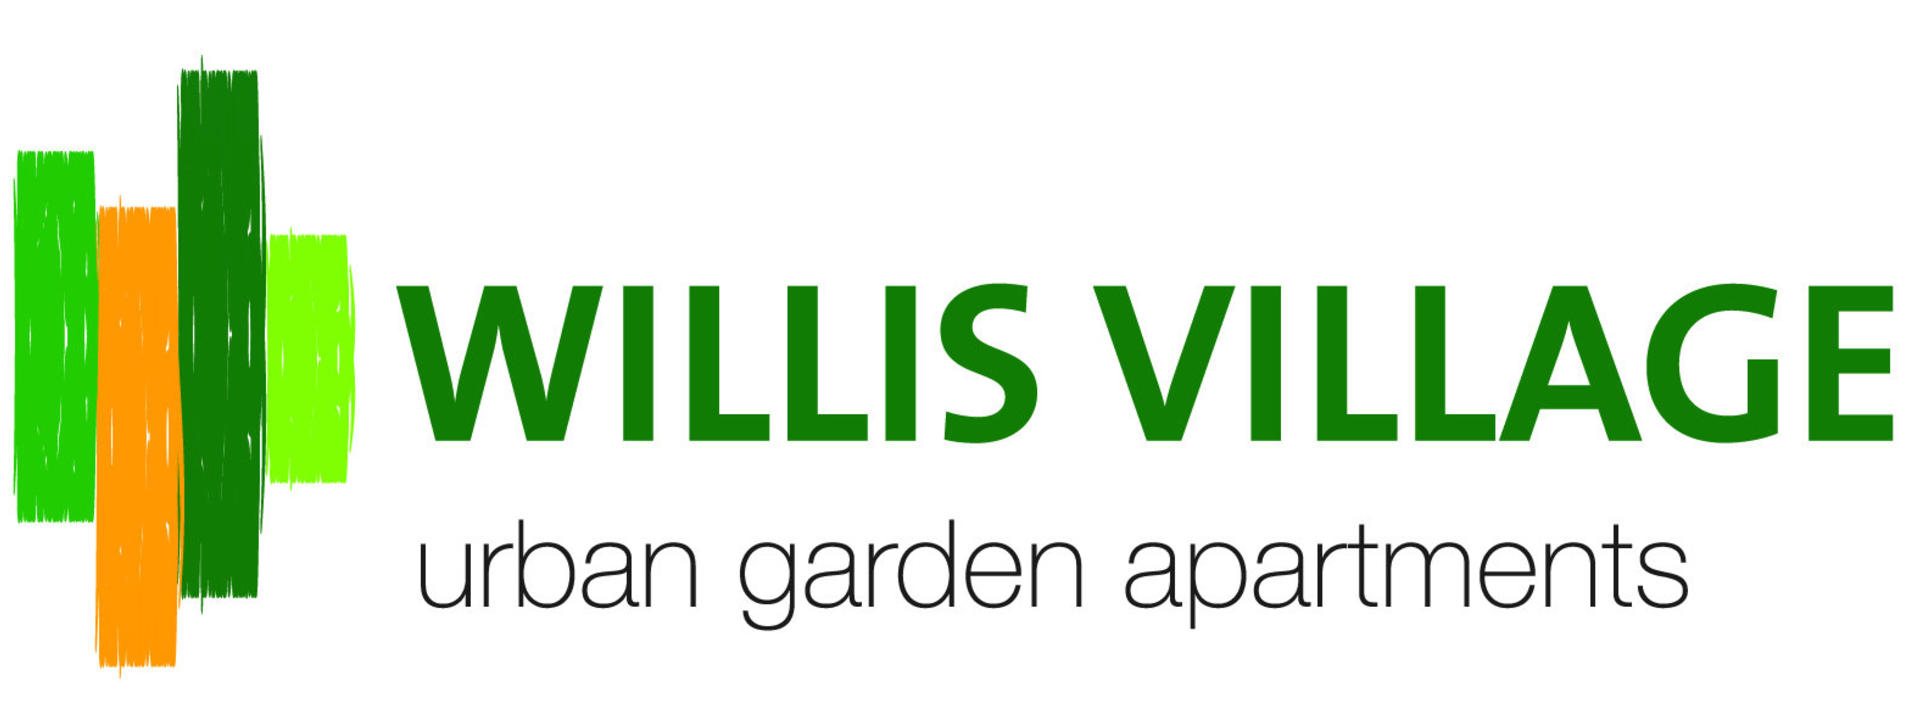 willis-village-logo-websitergb.jpg